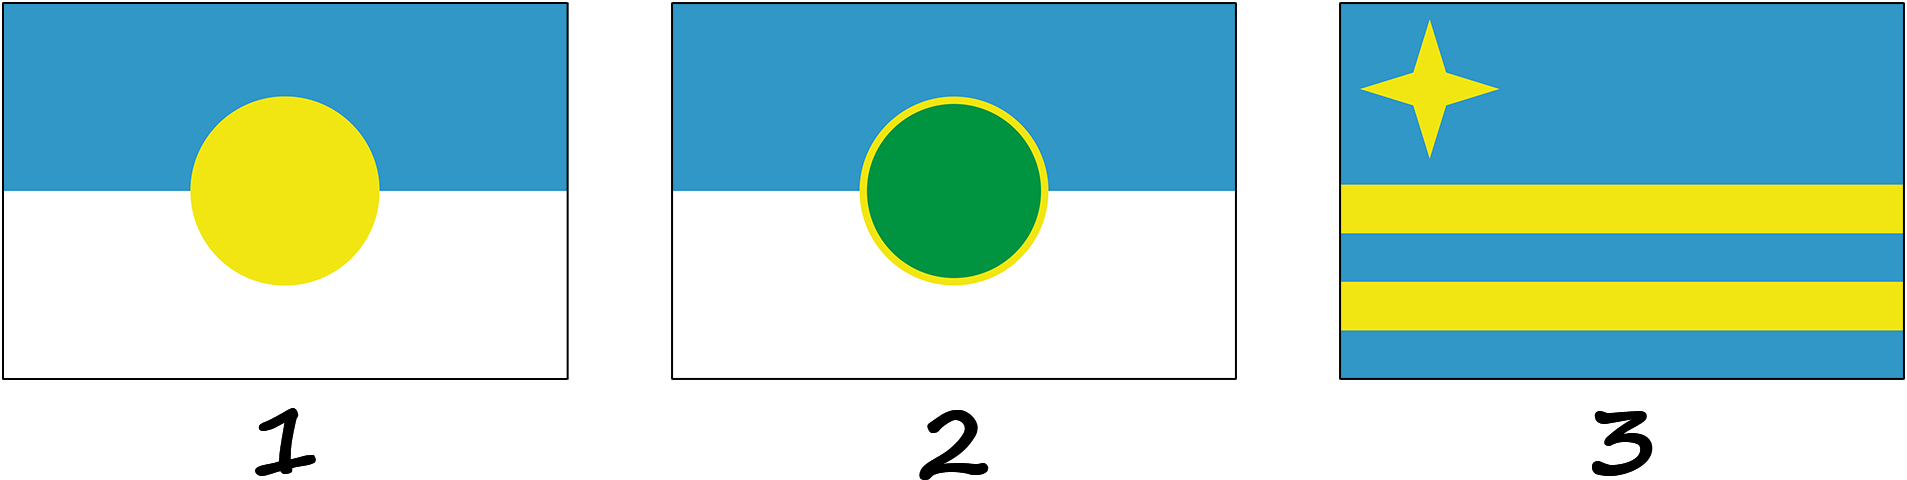 Histoire du drapeau d'Aruba